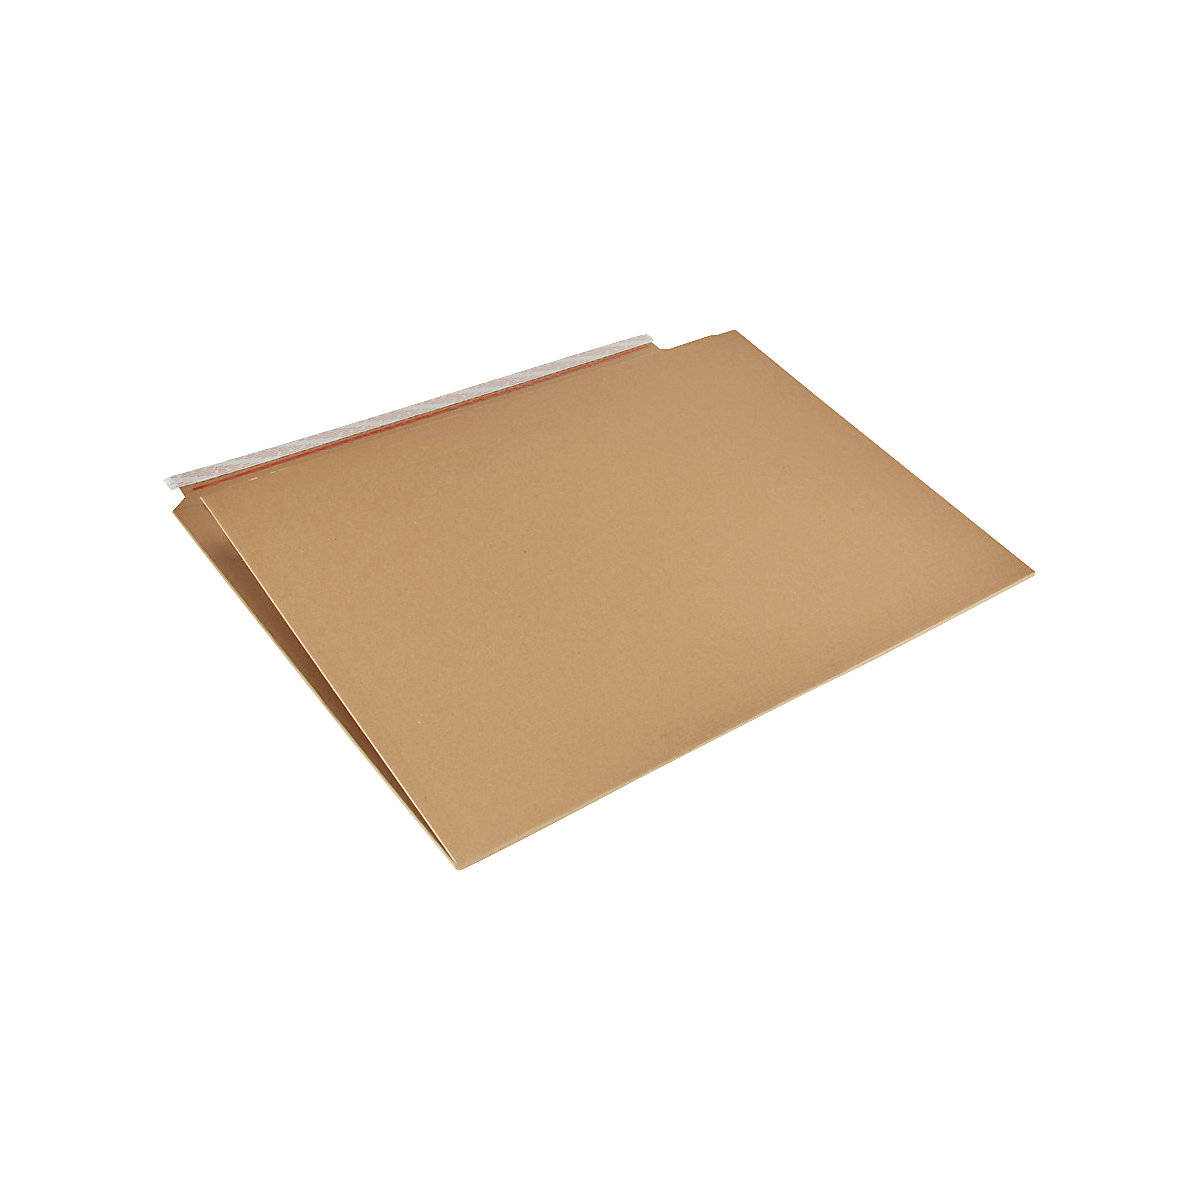 Imballaggio per libri Multistar – flow, marrone, lungh. x largh. 820 x 620 mm, a partire da 5 pz.-2